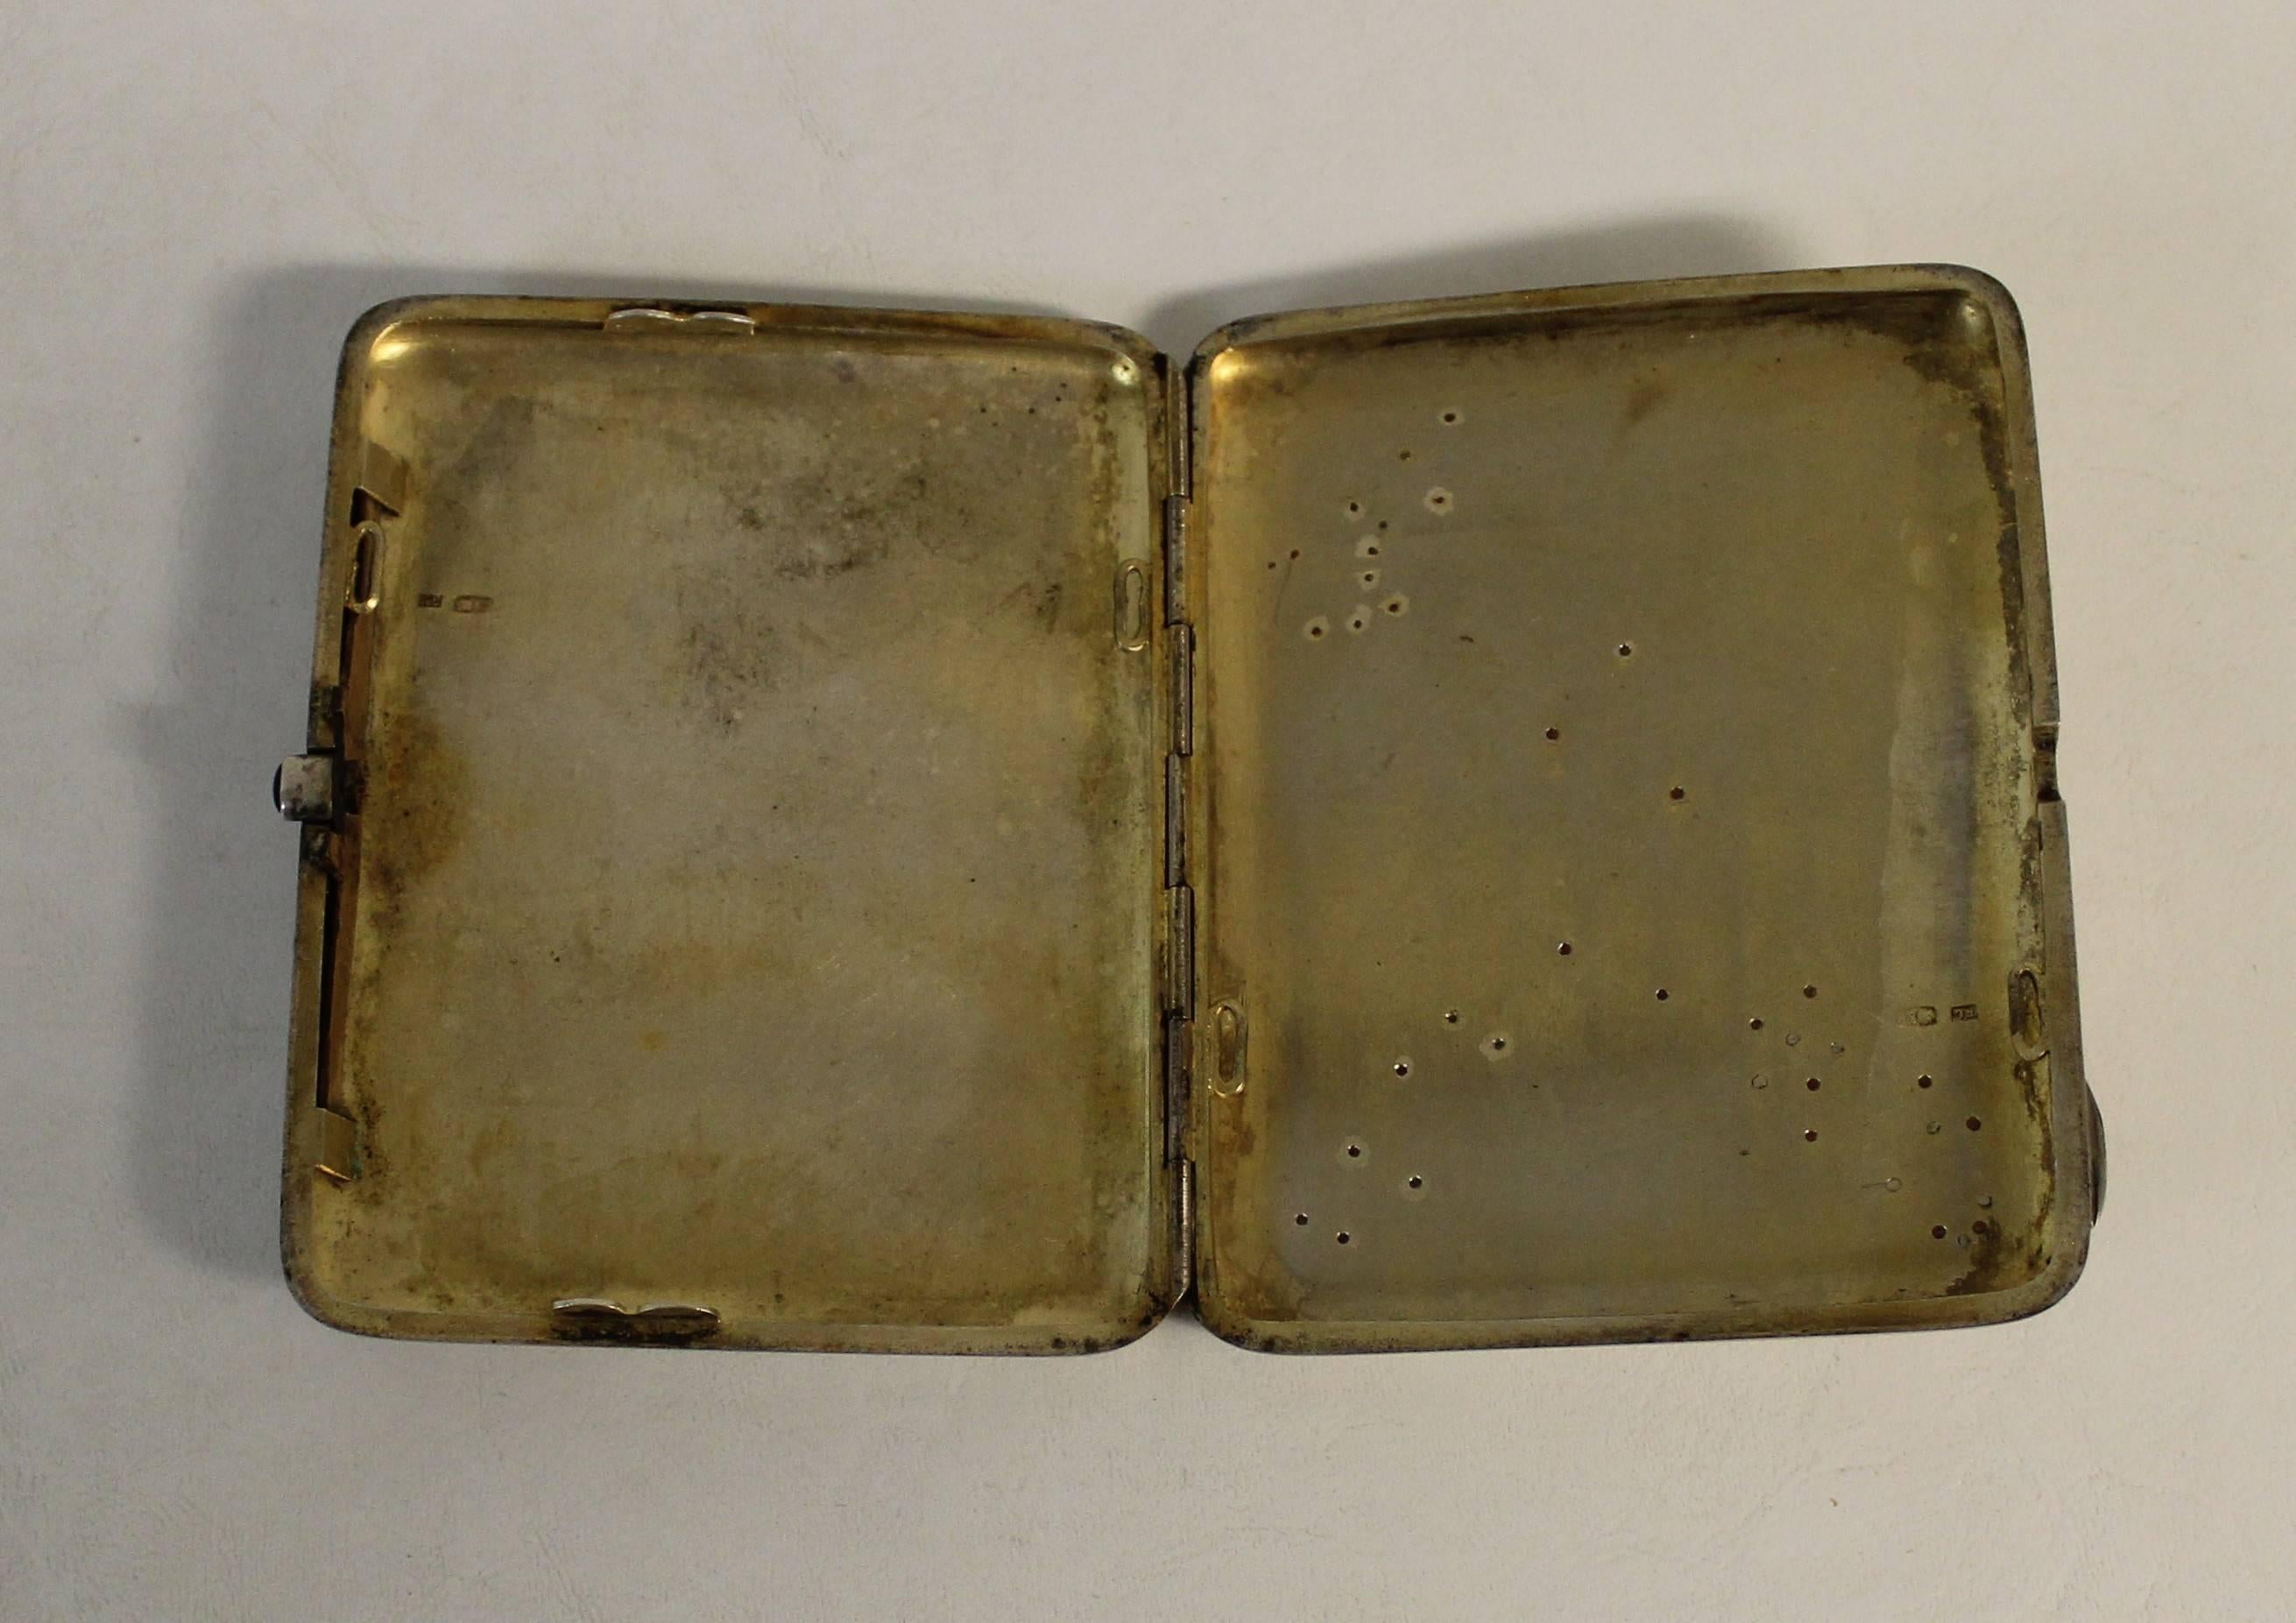 Russian Tsarist Silver and Gold Cigarette Case In Good Condition For Sale In Hamilton, Ontario